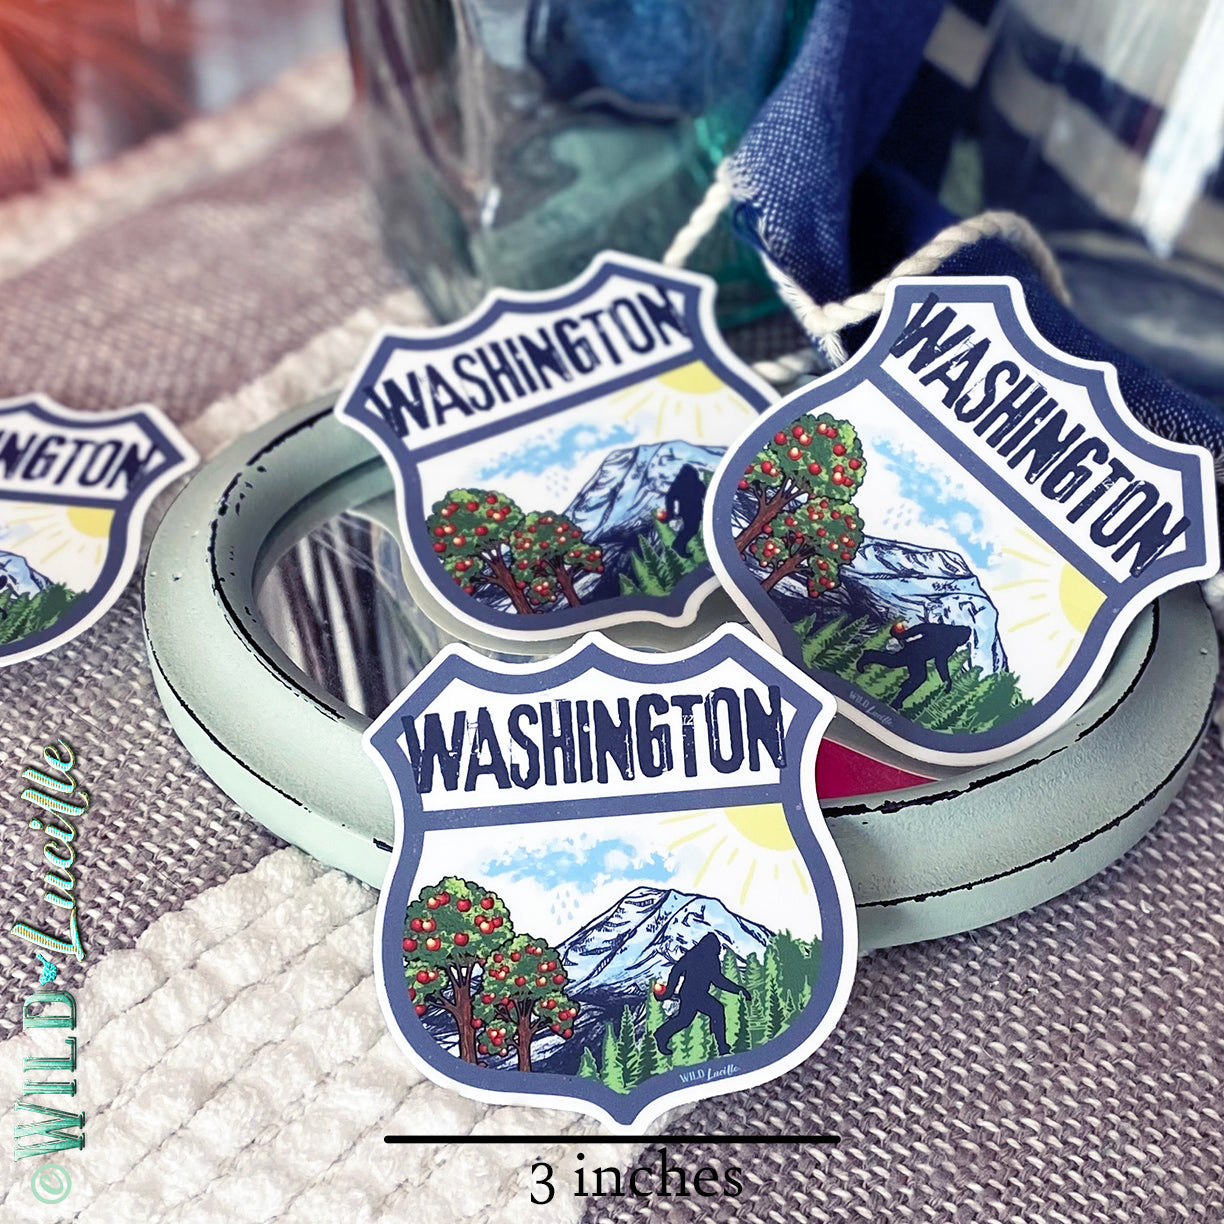 Destination Washington - Vinyl Souvenir Sticker Decals